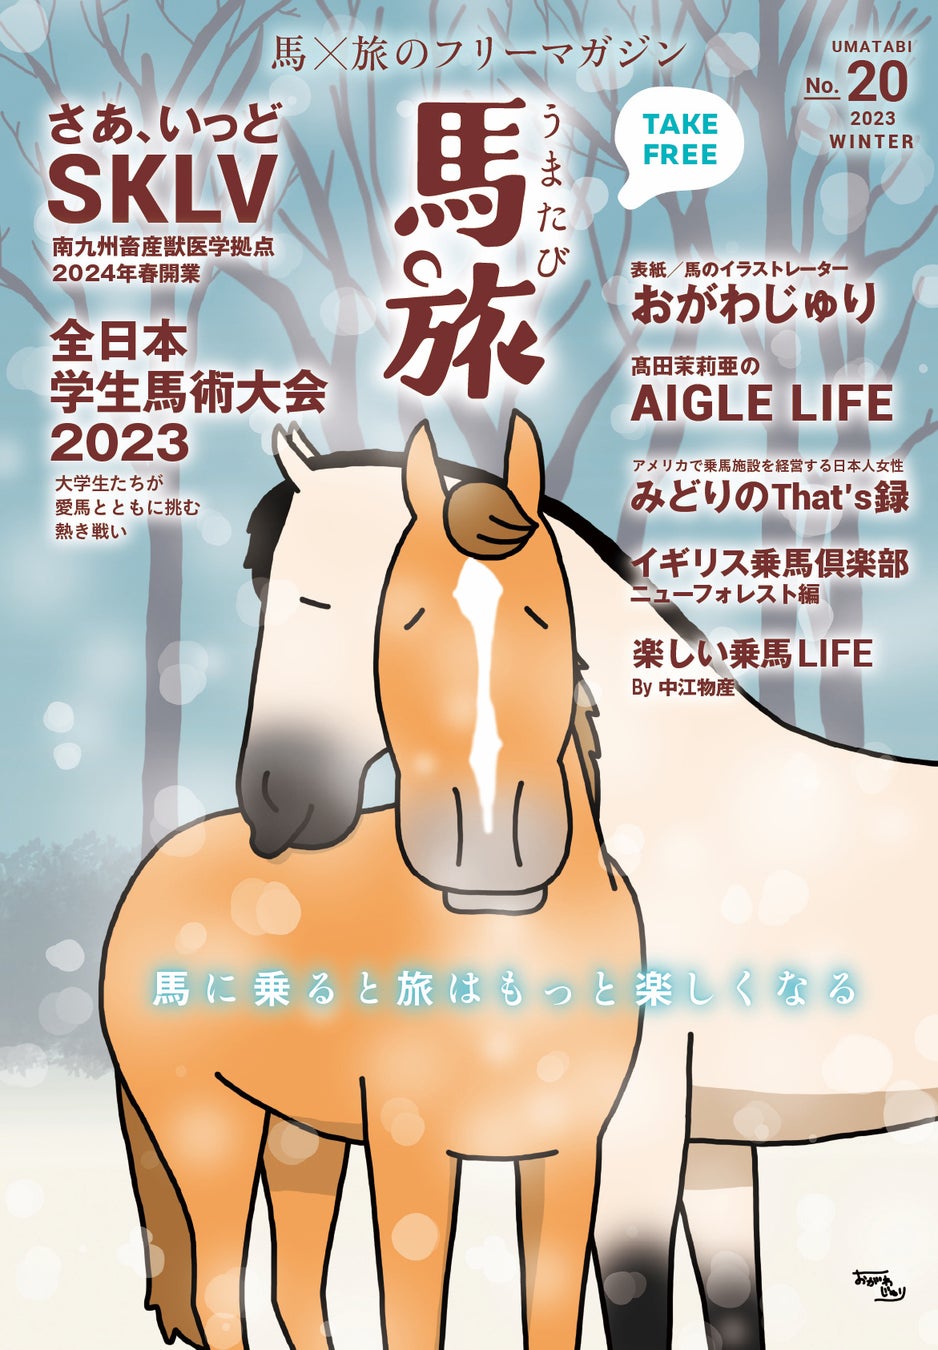 〜馬に乗ると旅はもっと楽しくなる〜　馬×旅のフリーマガジン馬旅2023冬号をリリース